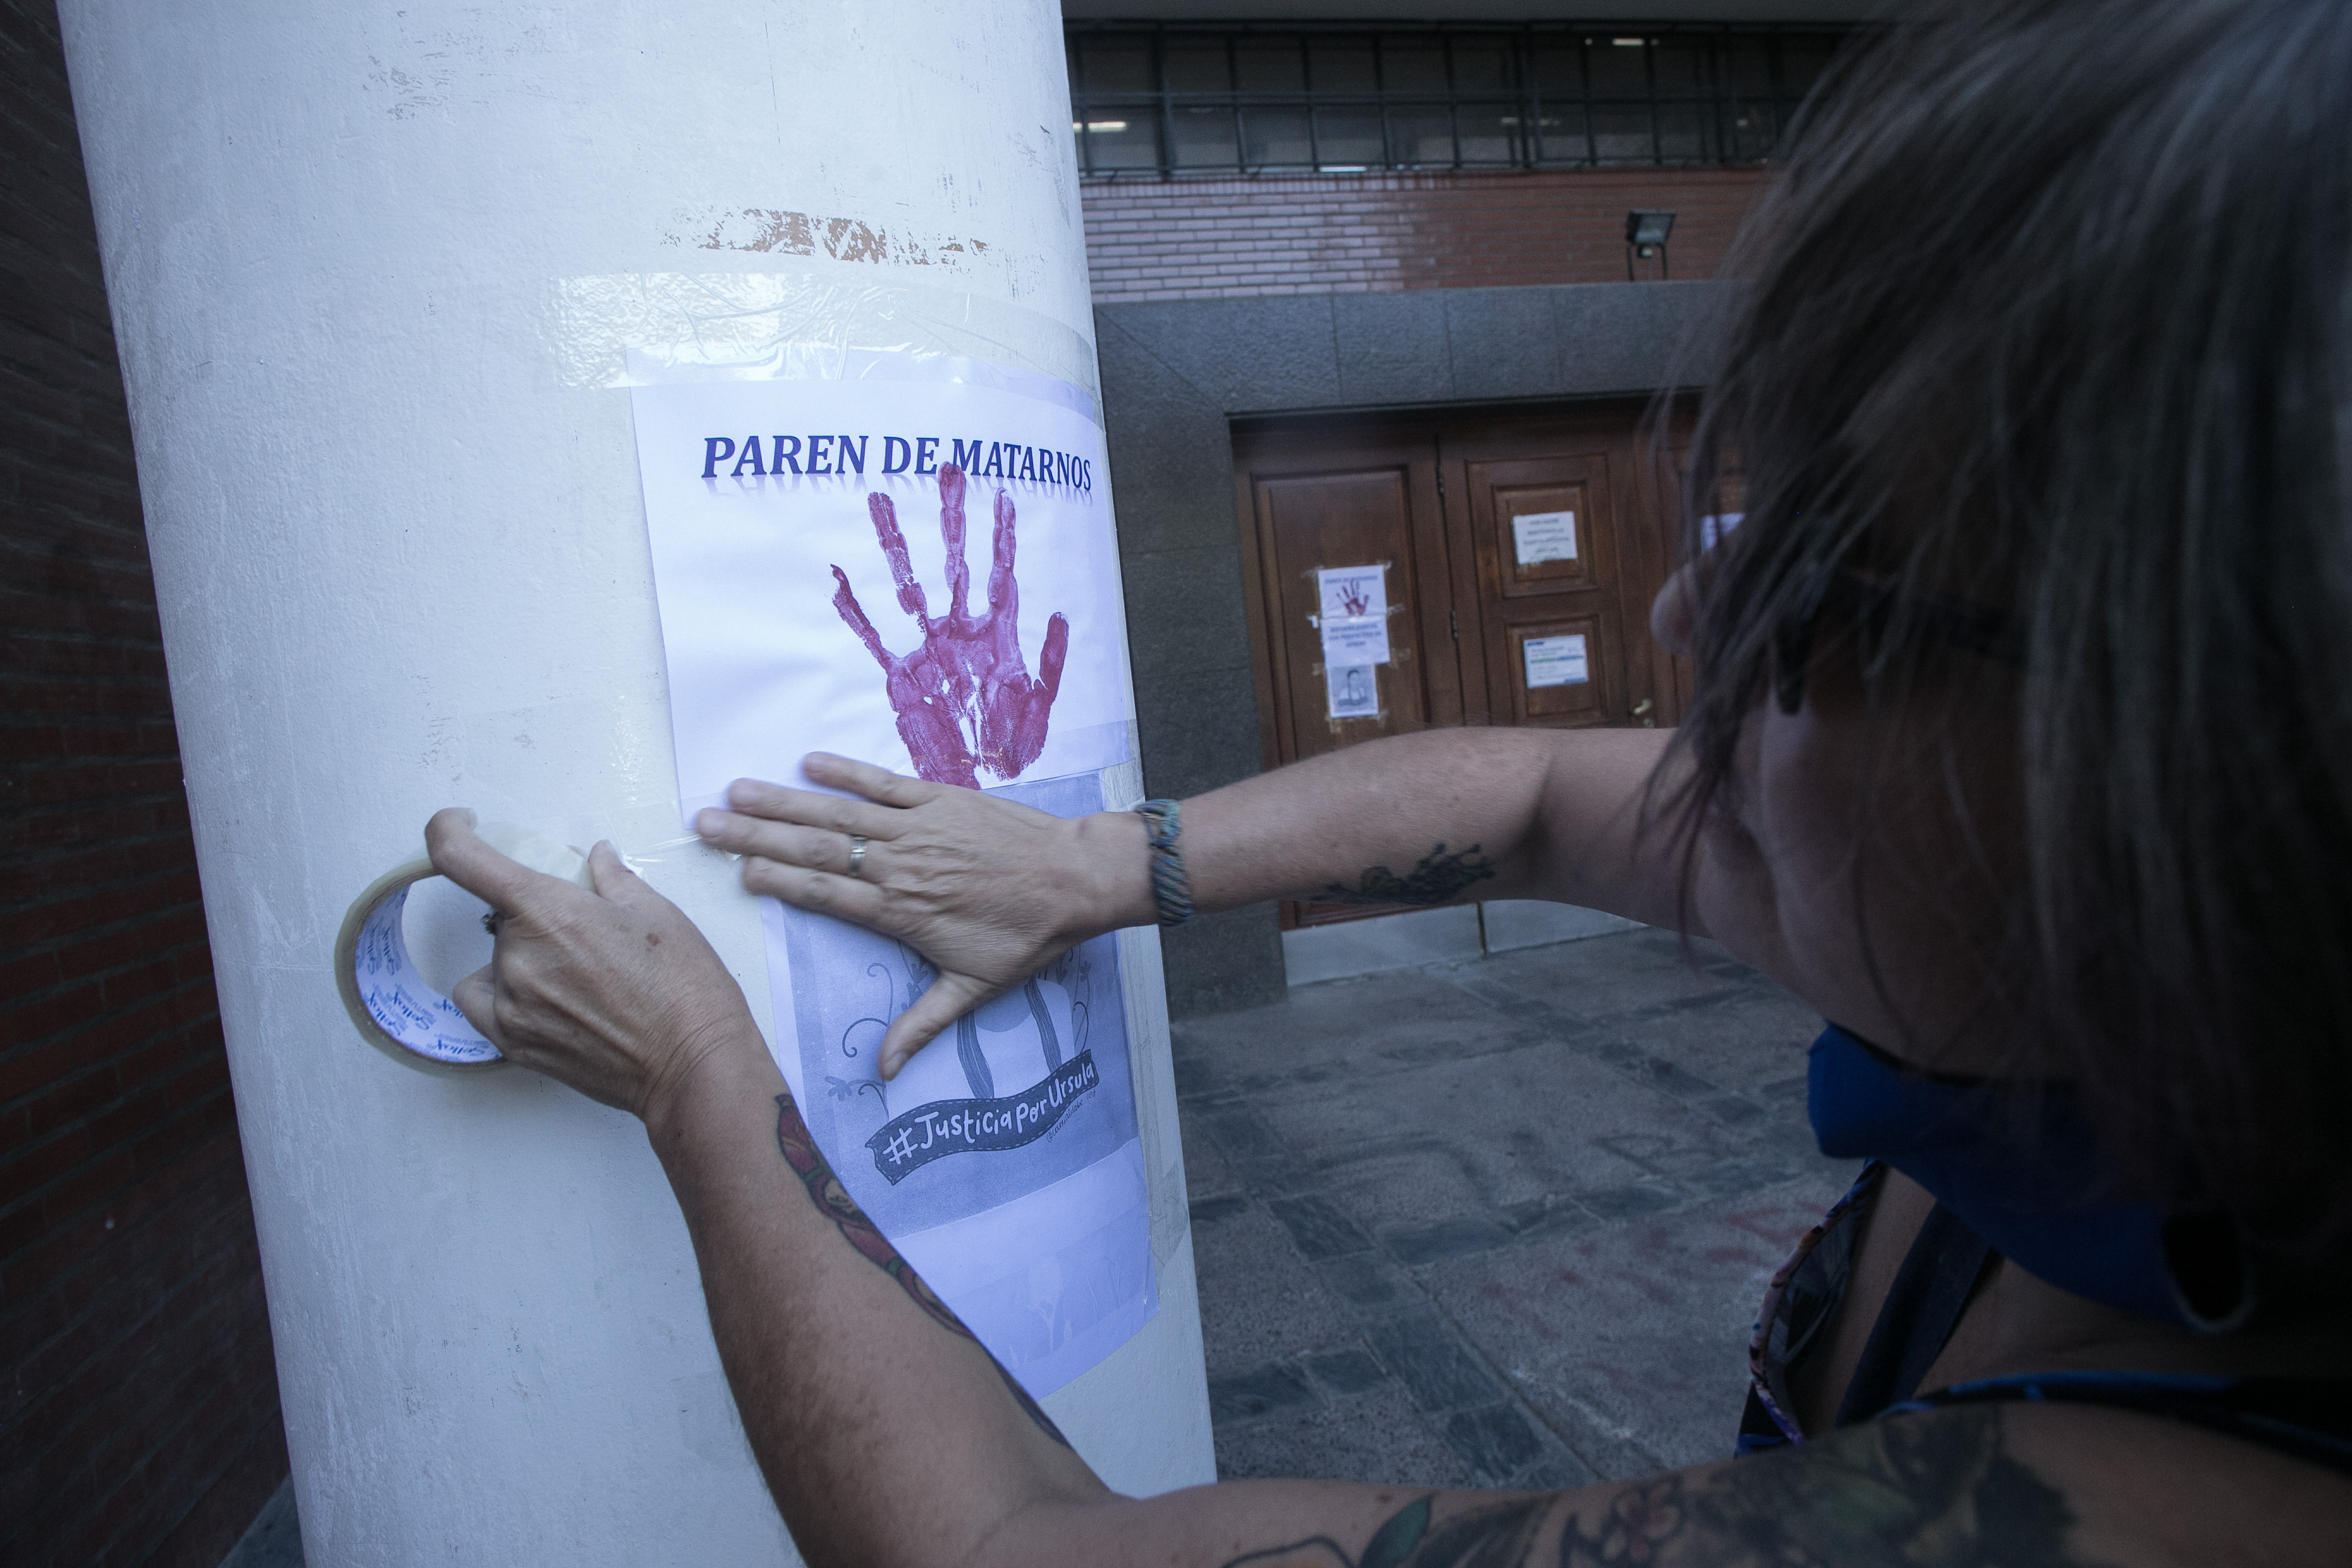 Las protestas se replican cada semana por el aumento de los femicidios en el país. Foto Archivo: Pablo Leguizamon